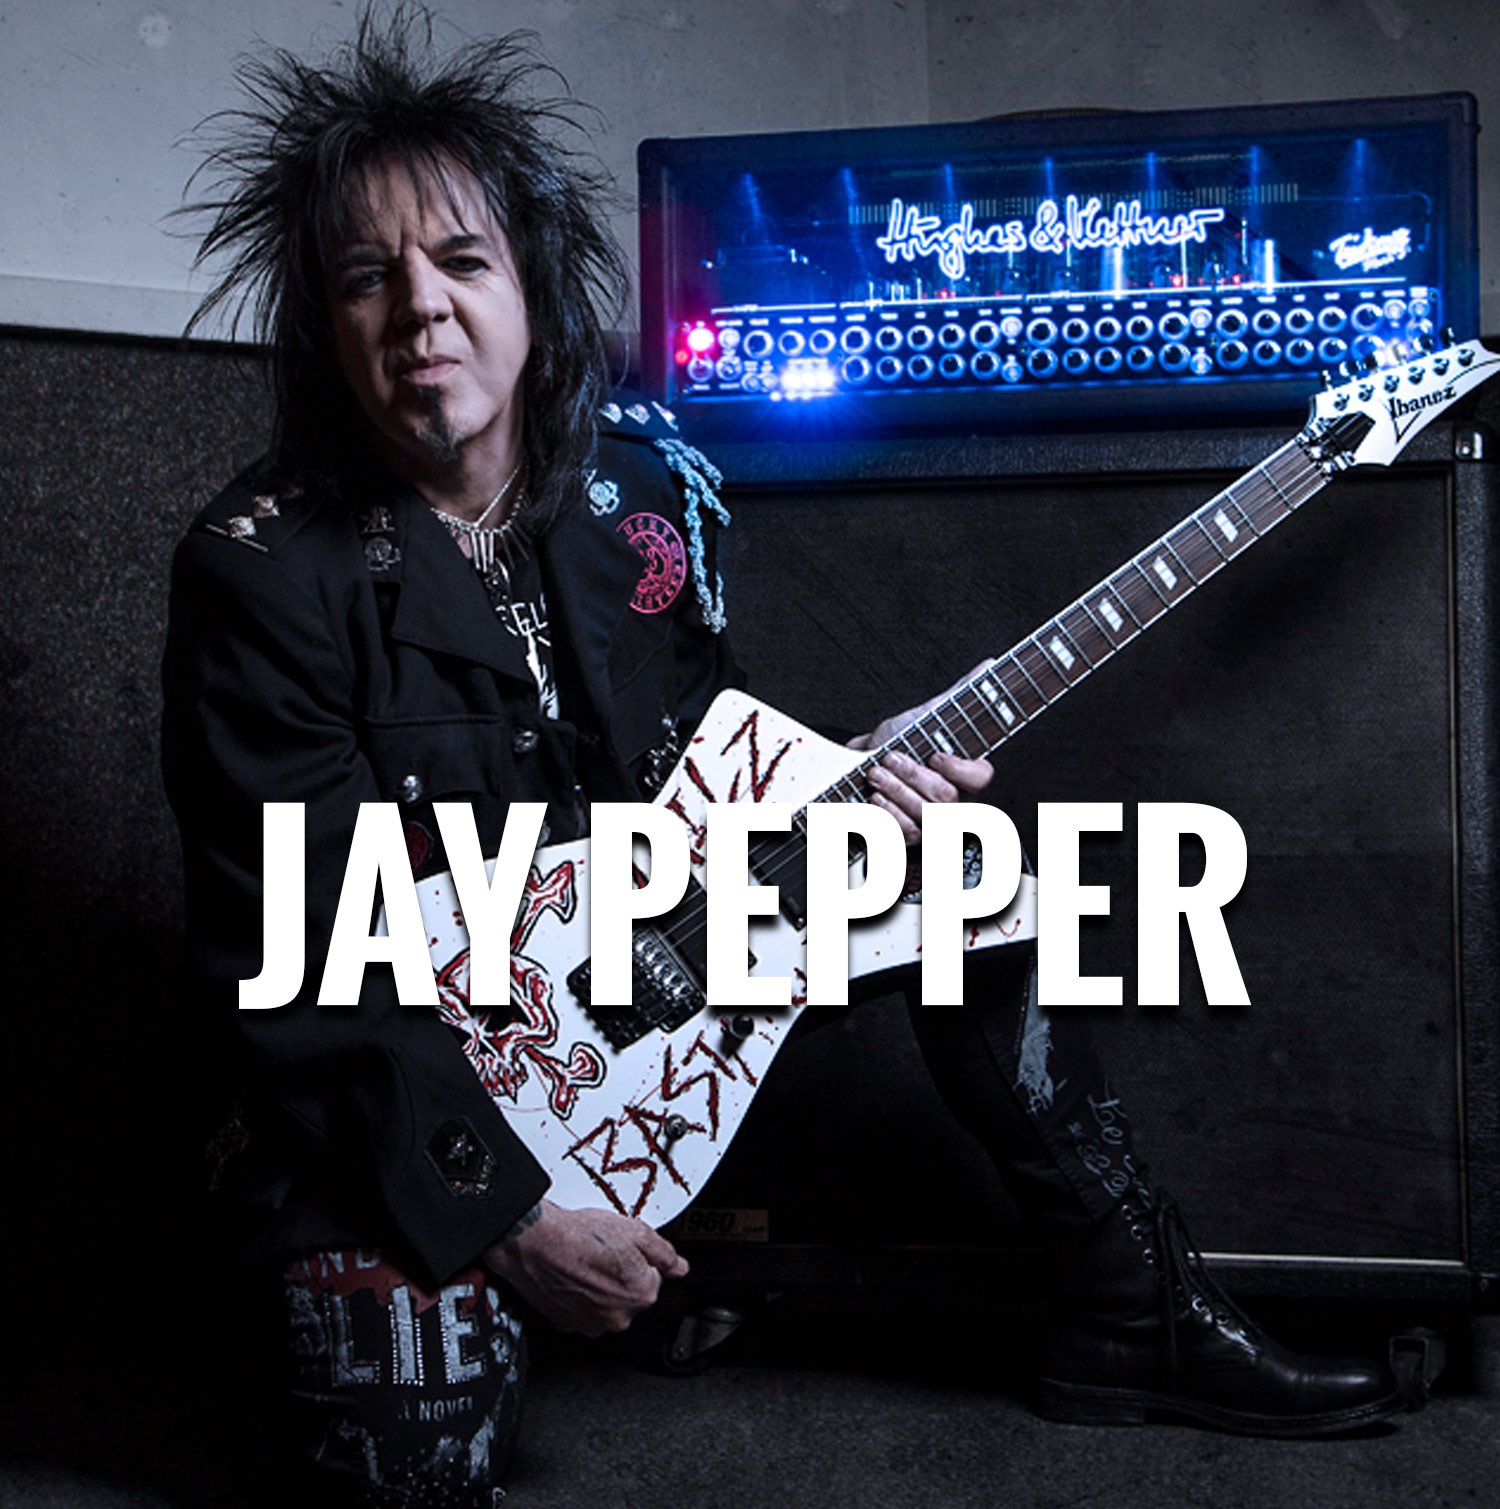 Jay Pepper